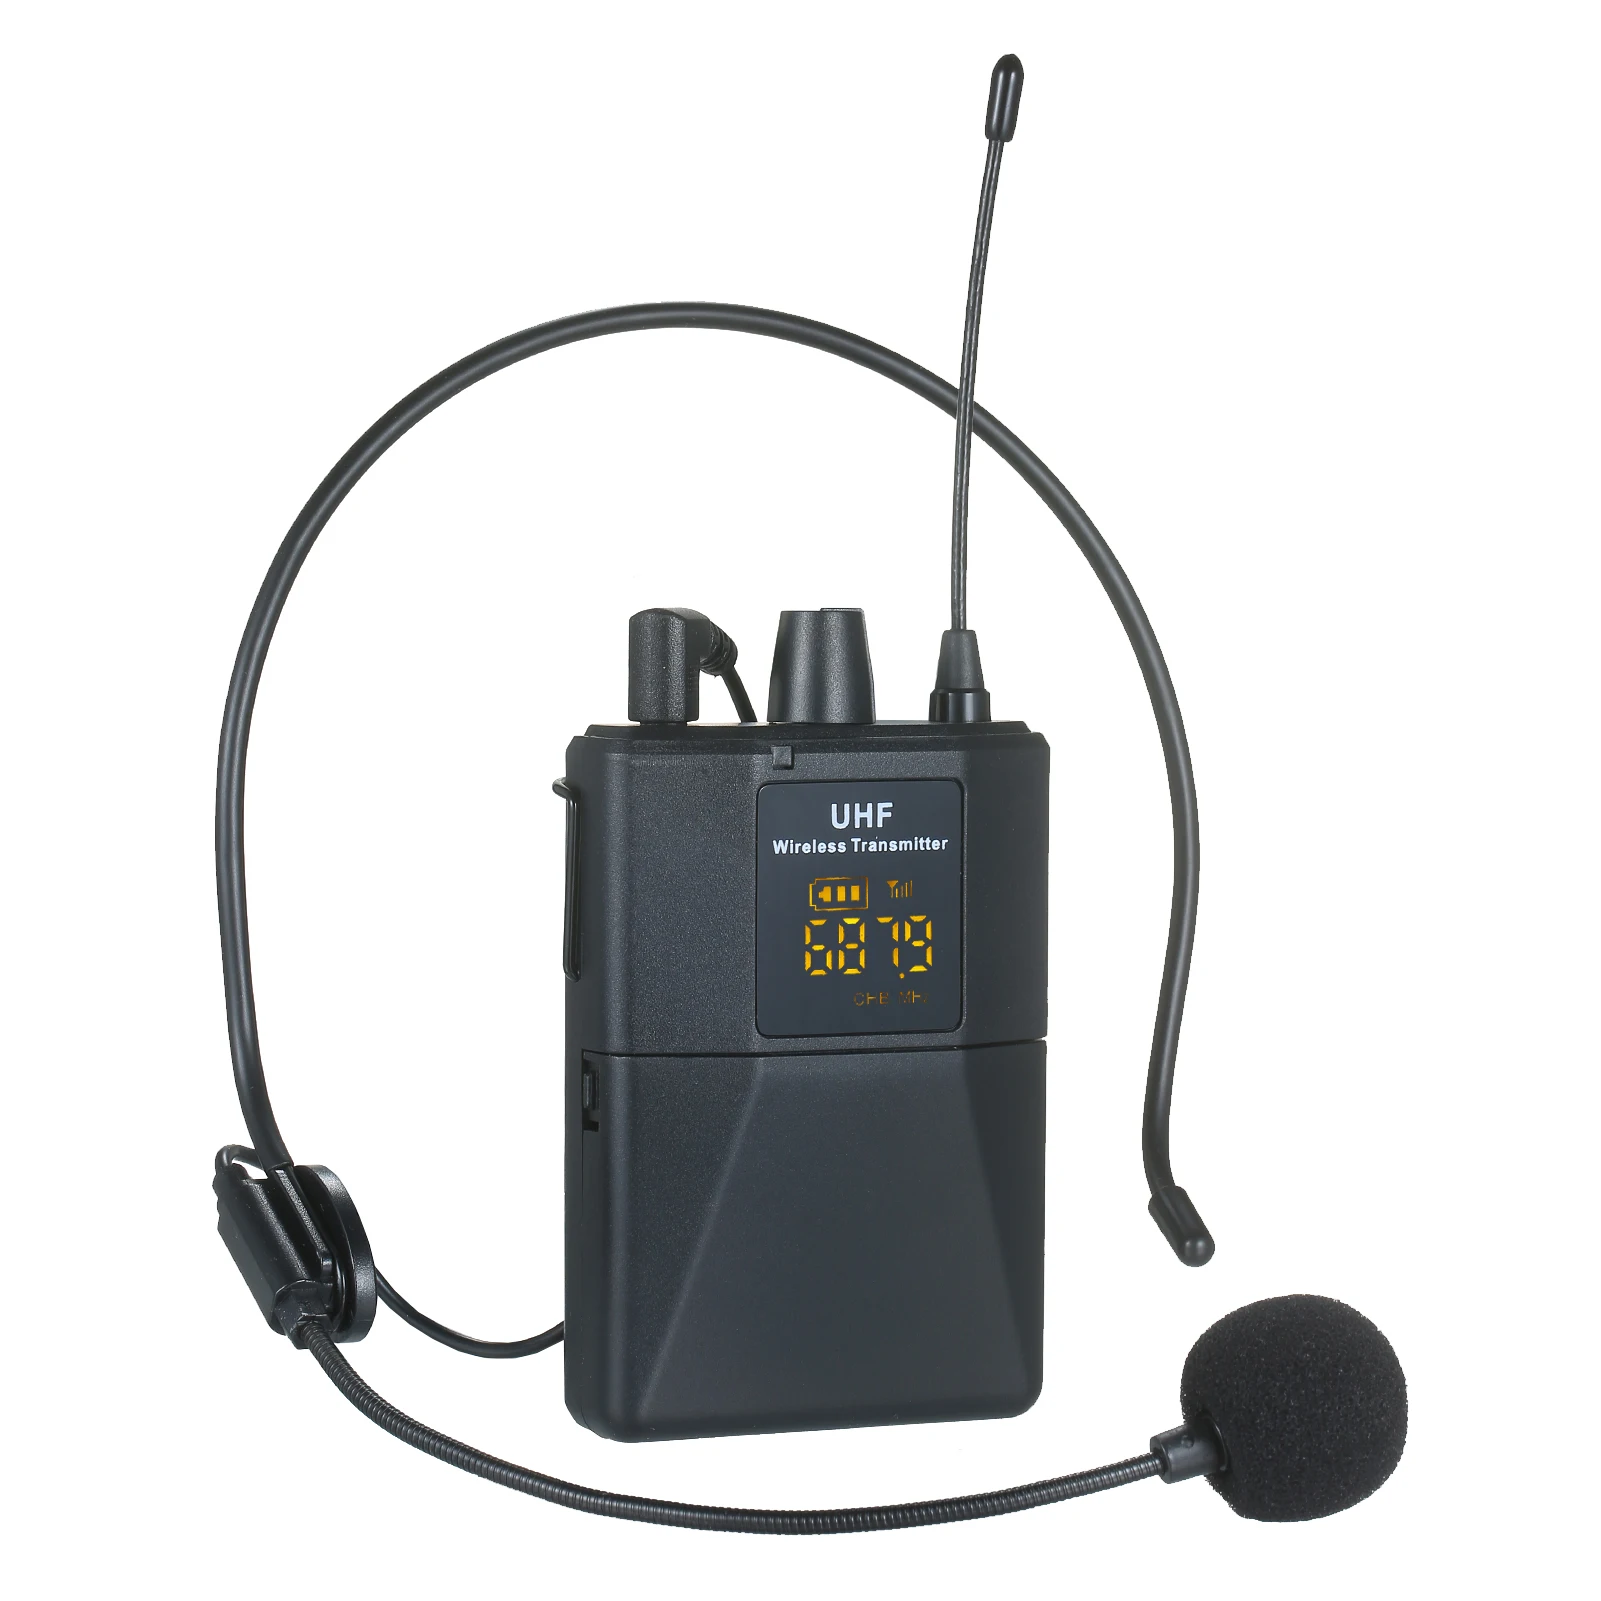 

Портативный комплект микрофона UHF и 1 приемник, 2 передатчика, 2 ПЕТЛИЧНЫХ микрофона, 2 гарнитуры, микрофон, перезаряжаемый приемник, частотна...